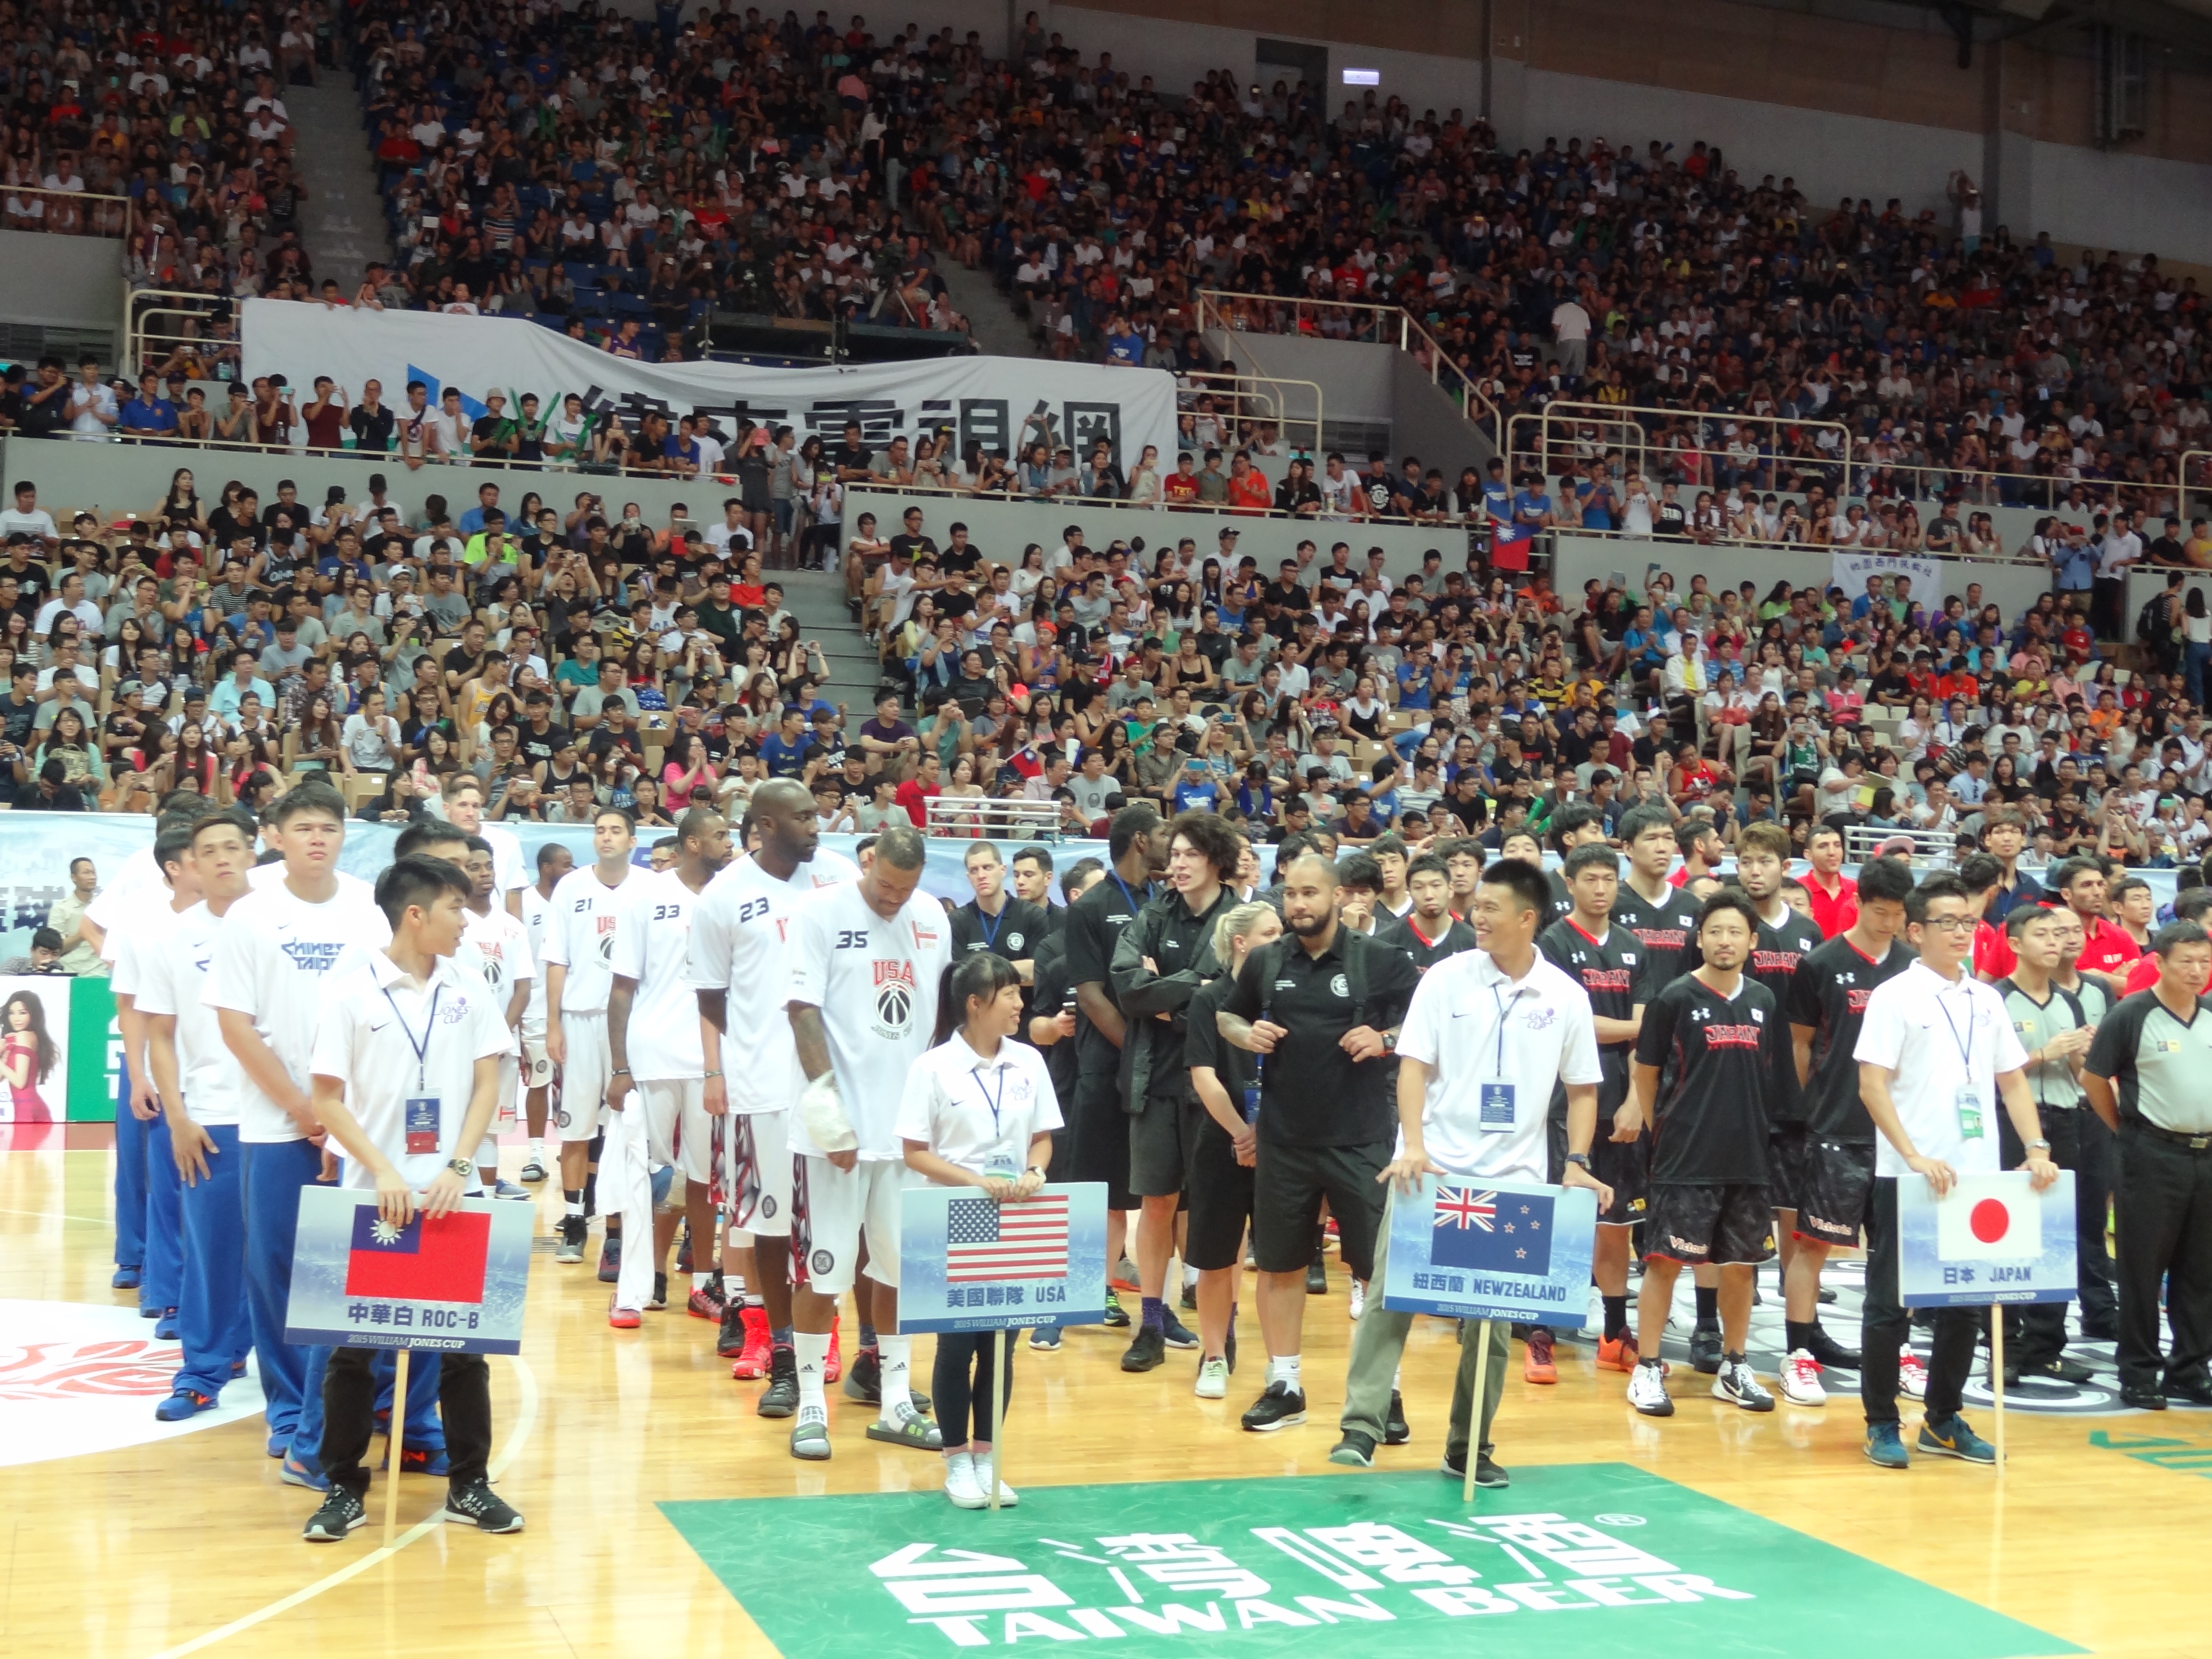 2015瓊斯盃籃球賽男子組開幕式 朱立倫市長開球